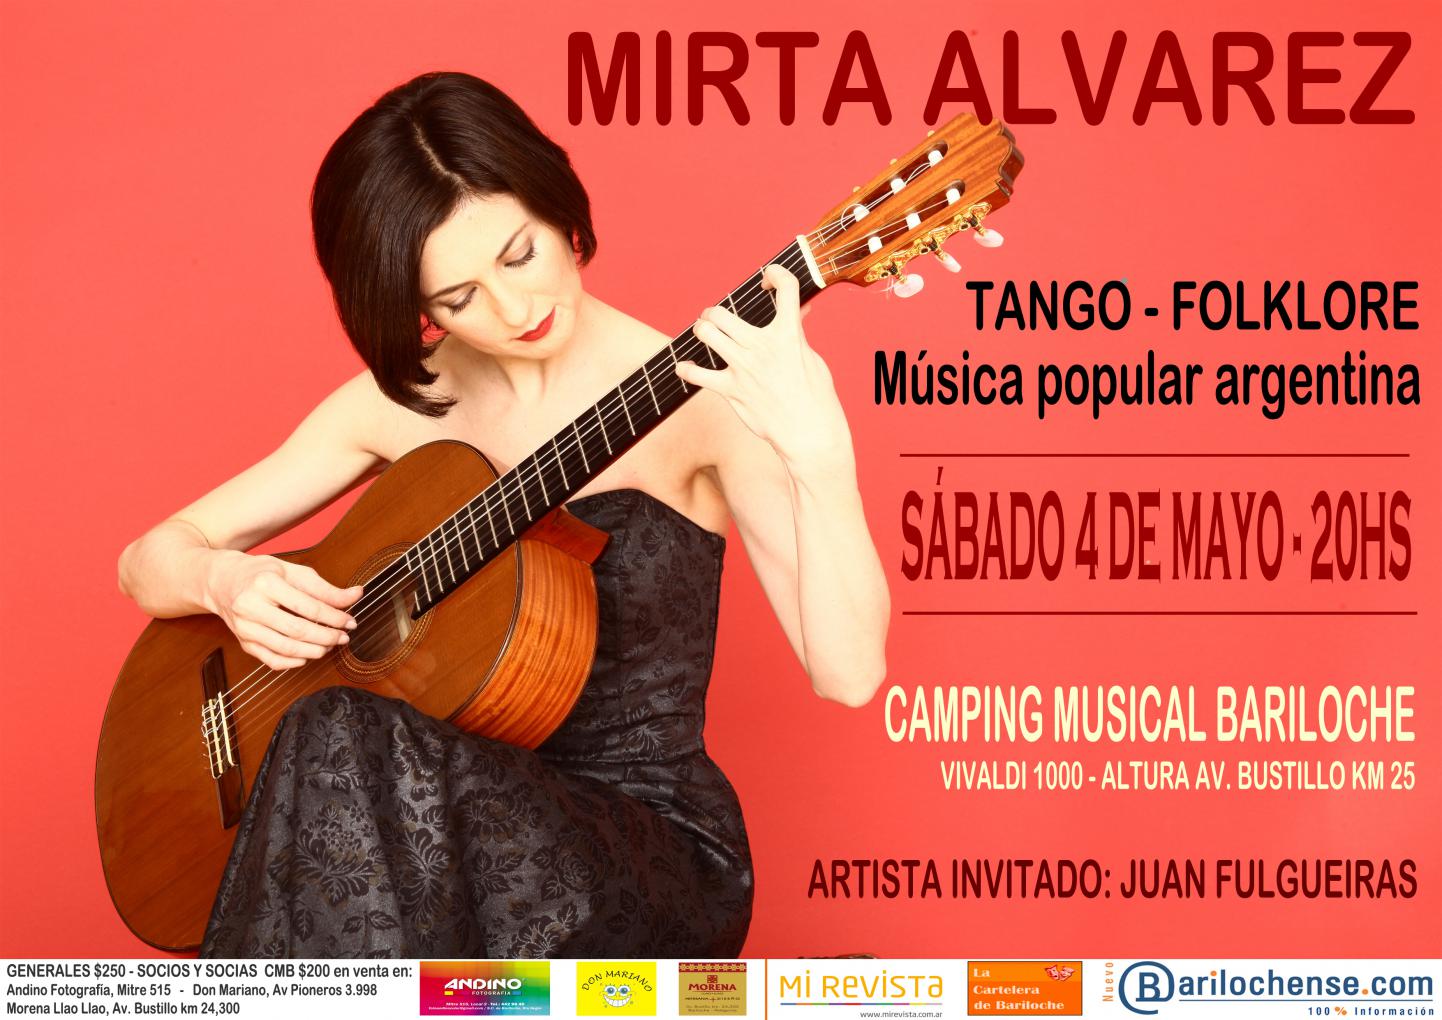 Mirta Alvarez en concierto: guitarra y voz